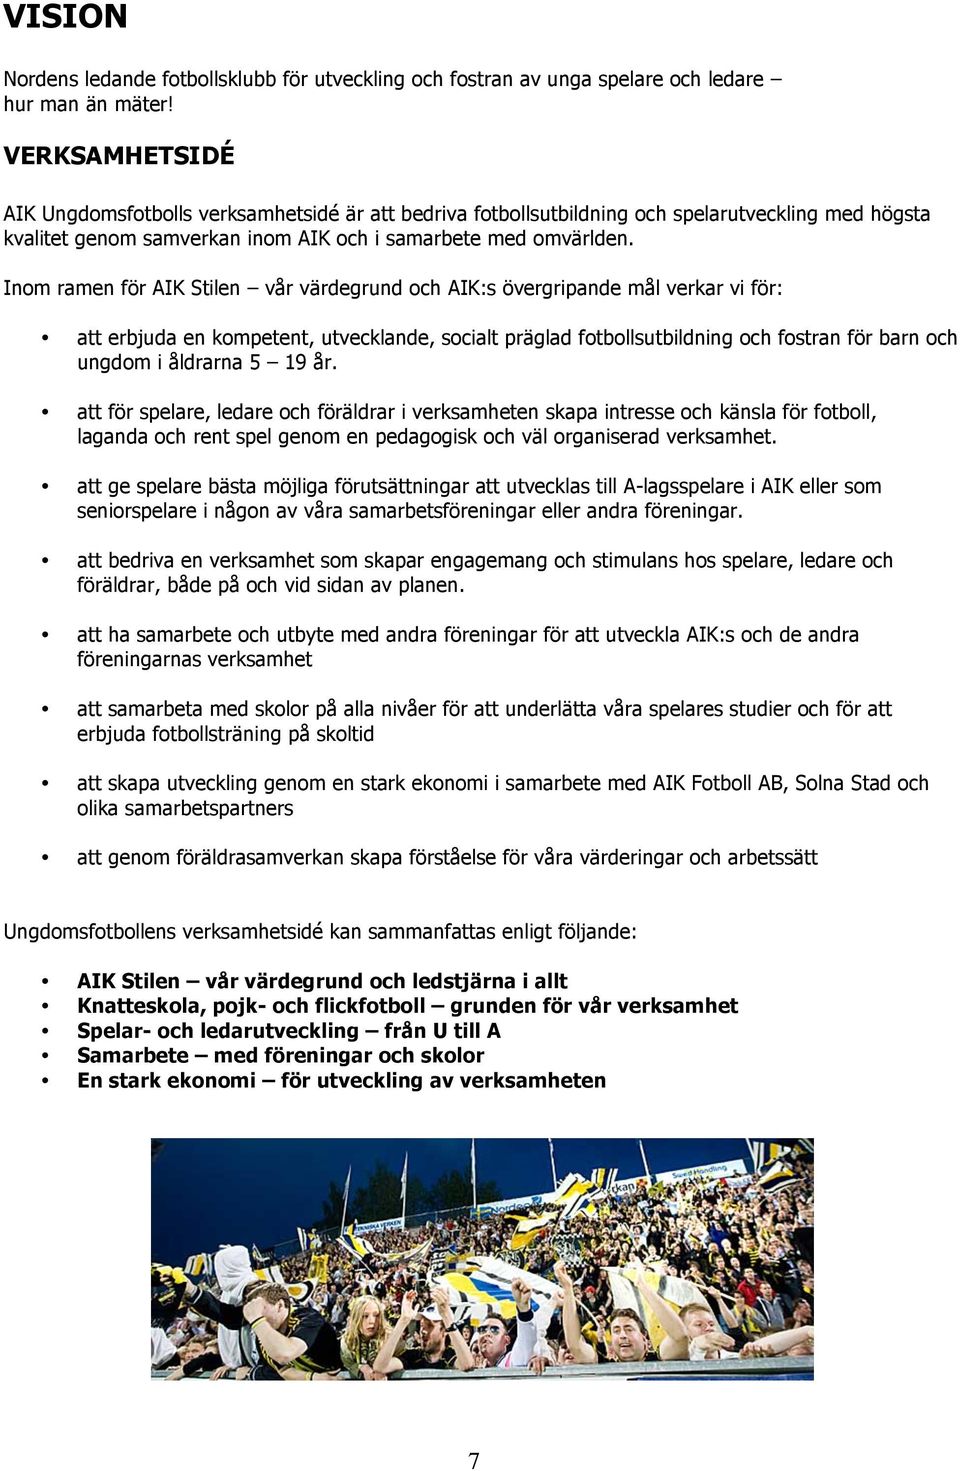 Inom ramen för AIK Stilen vår värdegrund och AIK:s övergripande mål verkar vi för: att erbjuda en kompetent, utvecklande, socialt präglad fotbollsutbildning och fostran för barn och ungdom i åldrarna